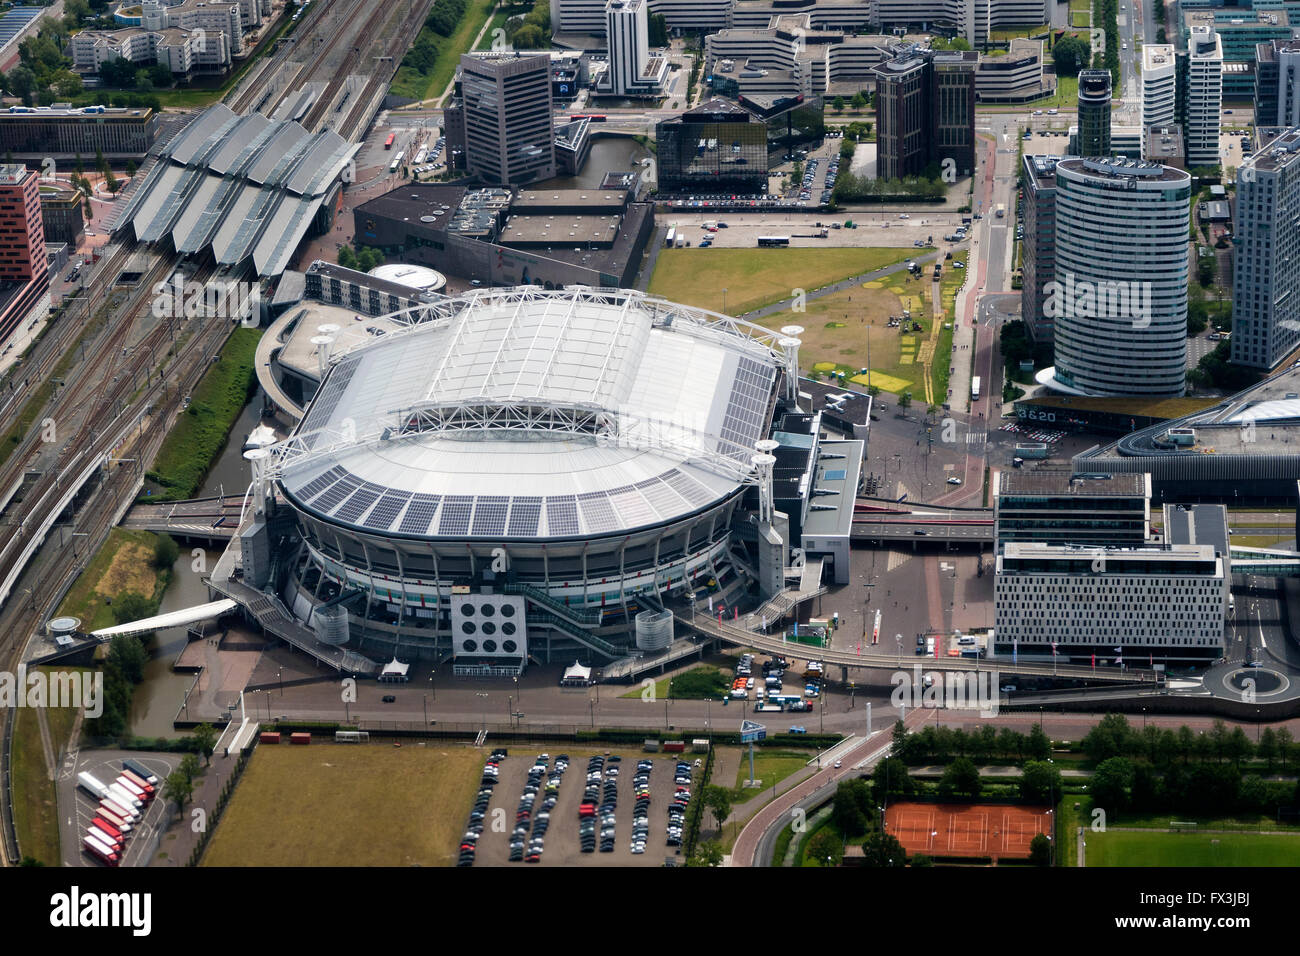 Vista aérea del estadio de fútbol del Ajax de Amsterdam, Países Bajos Foto de stock